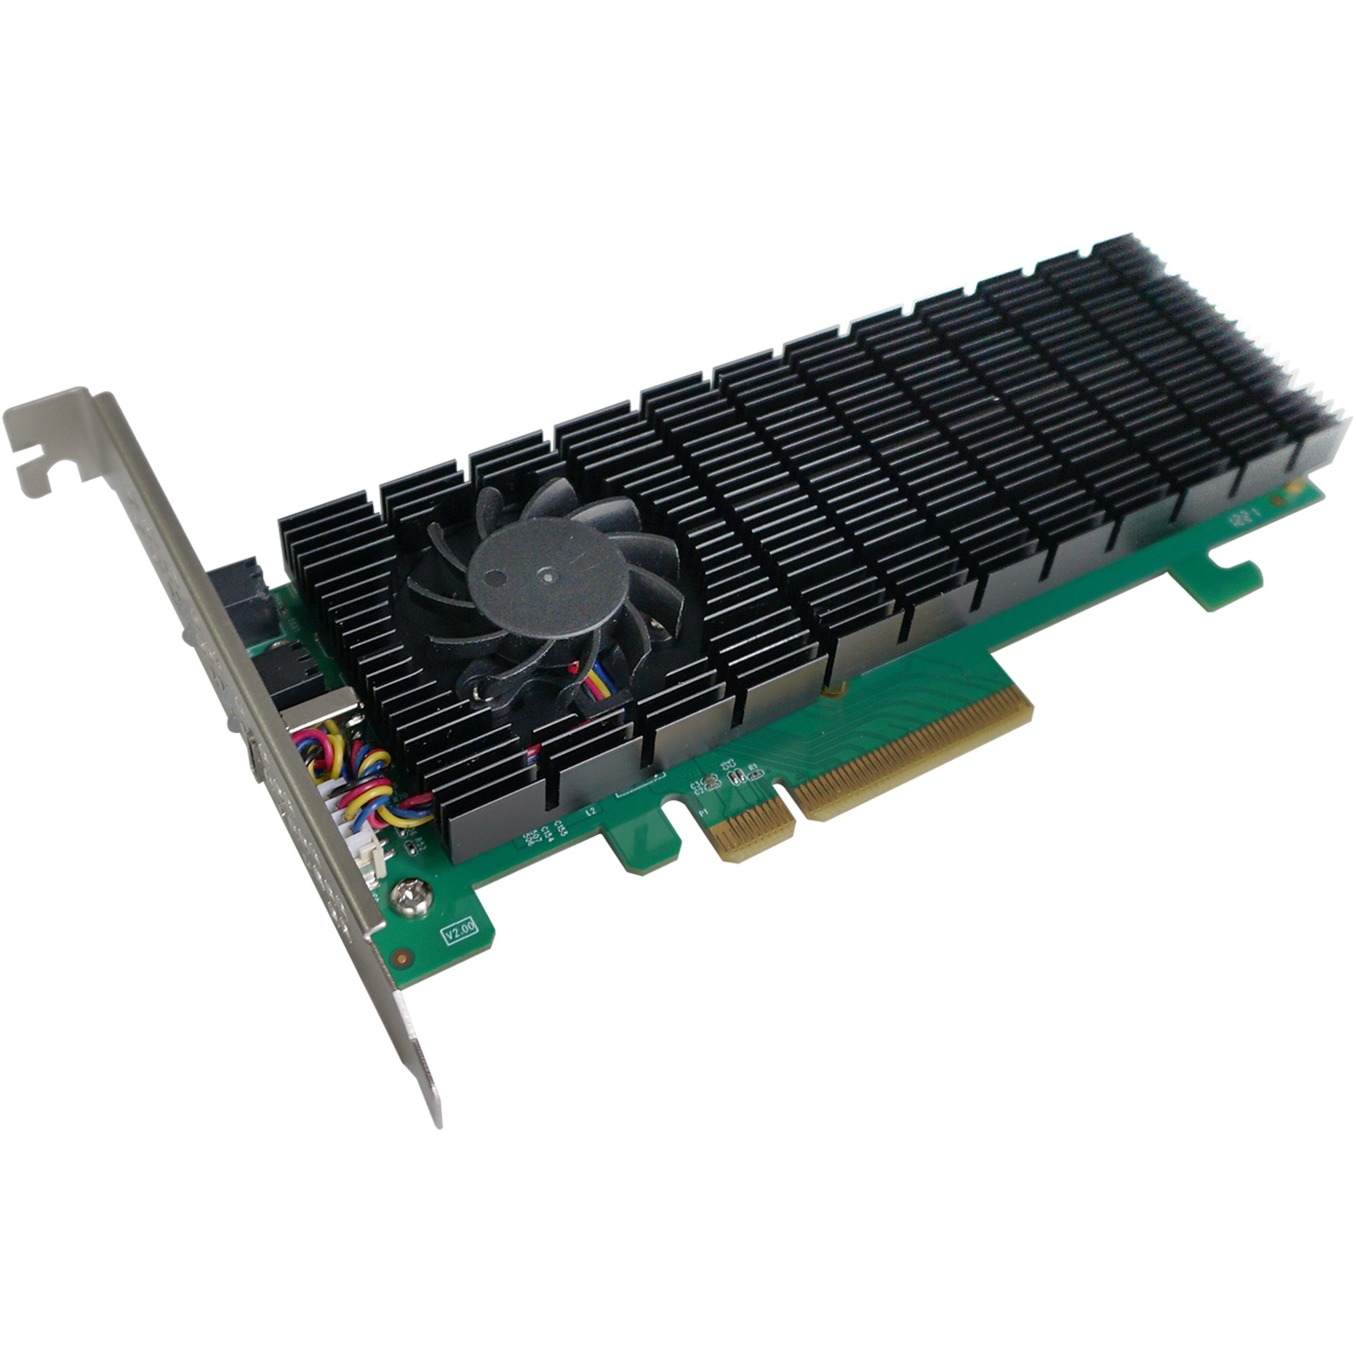 SSD6202A 2x M.2, Schnittstellenkarte von HighPoint